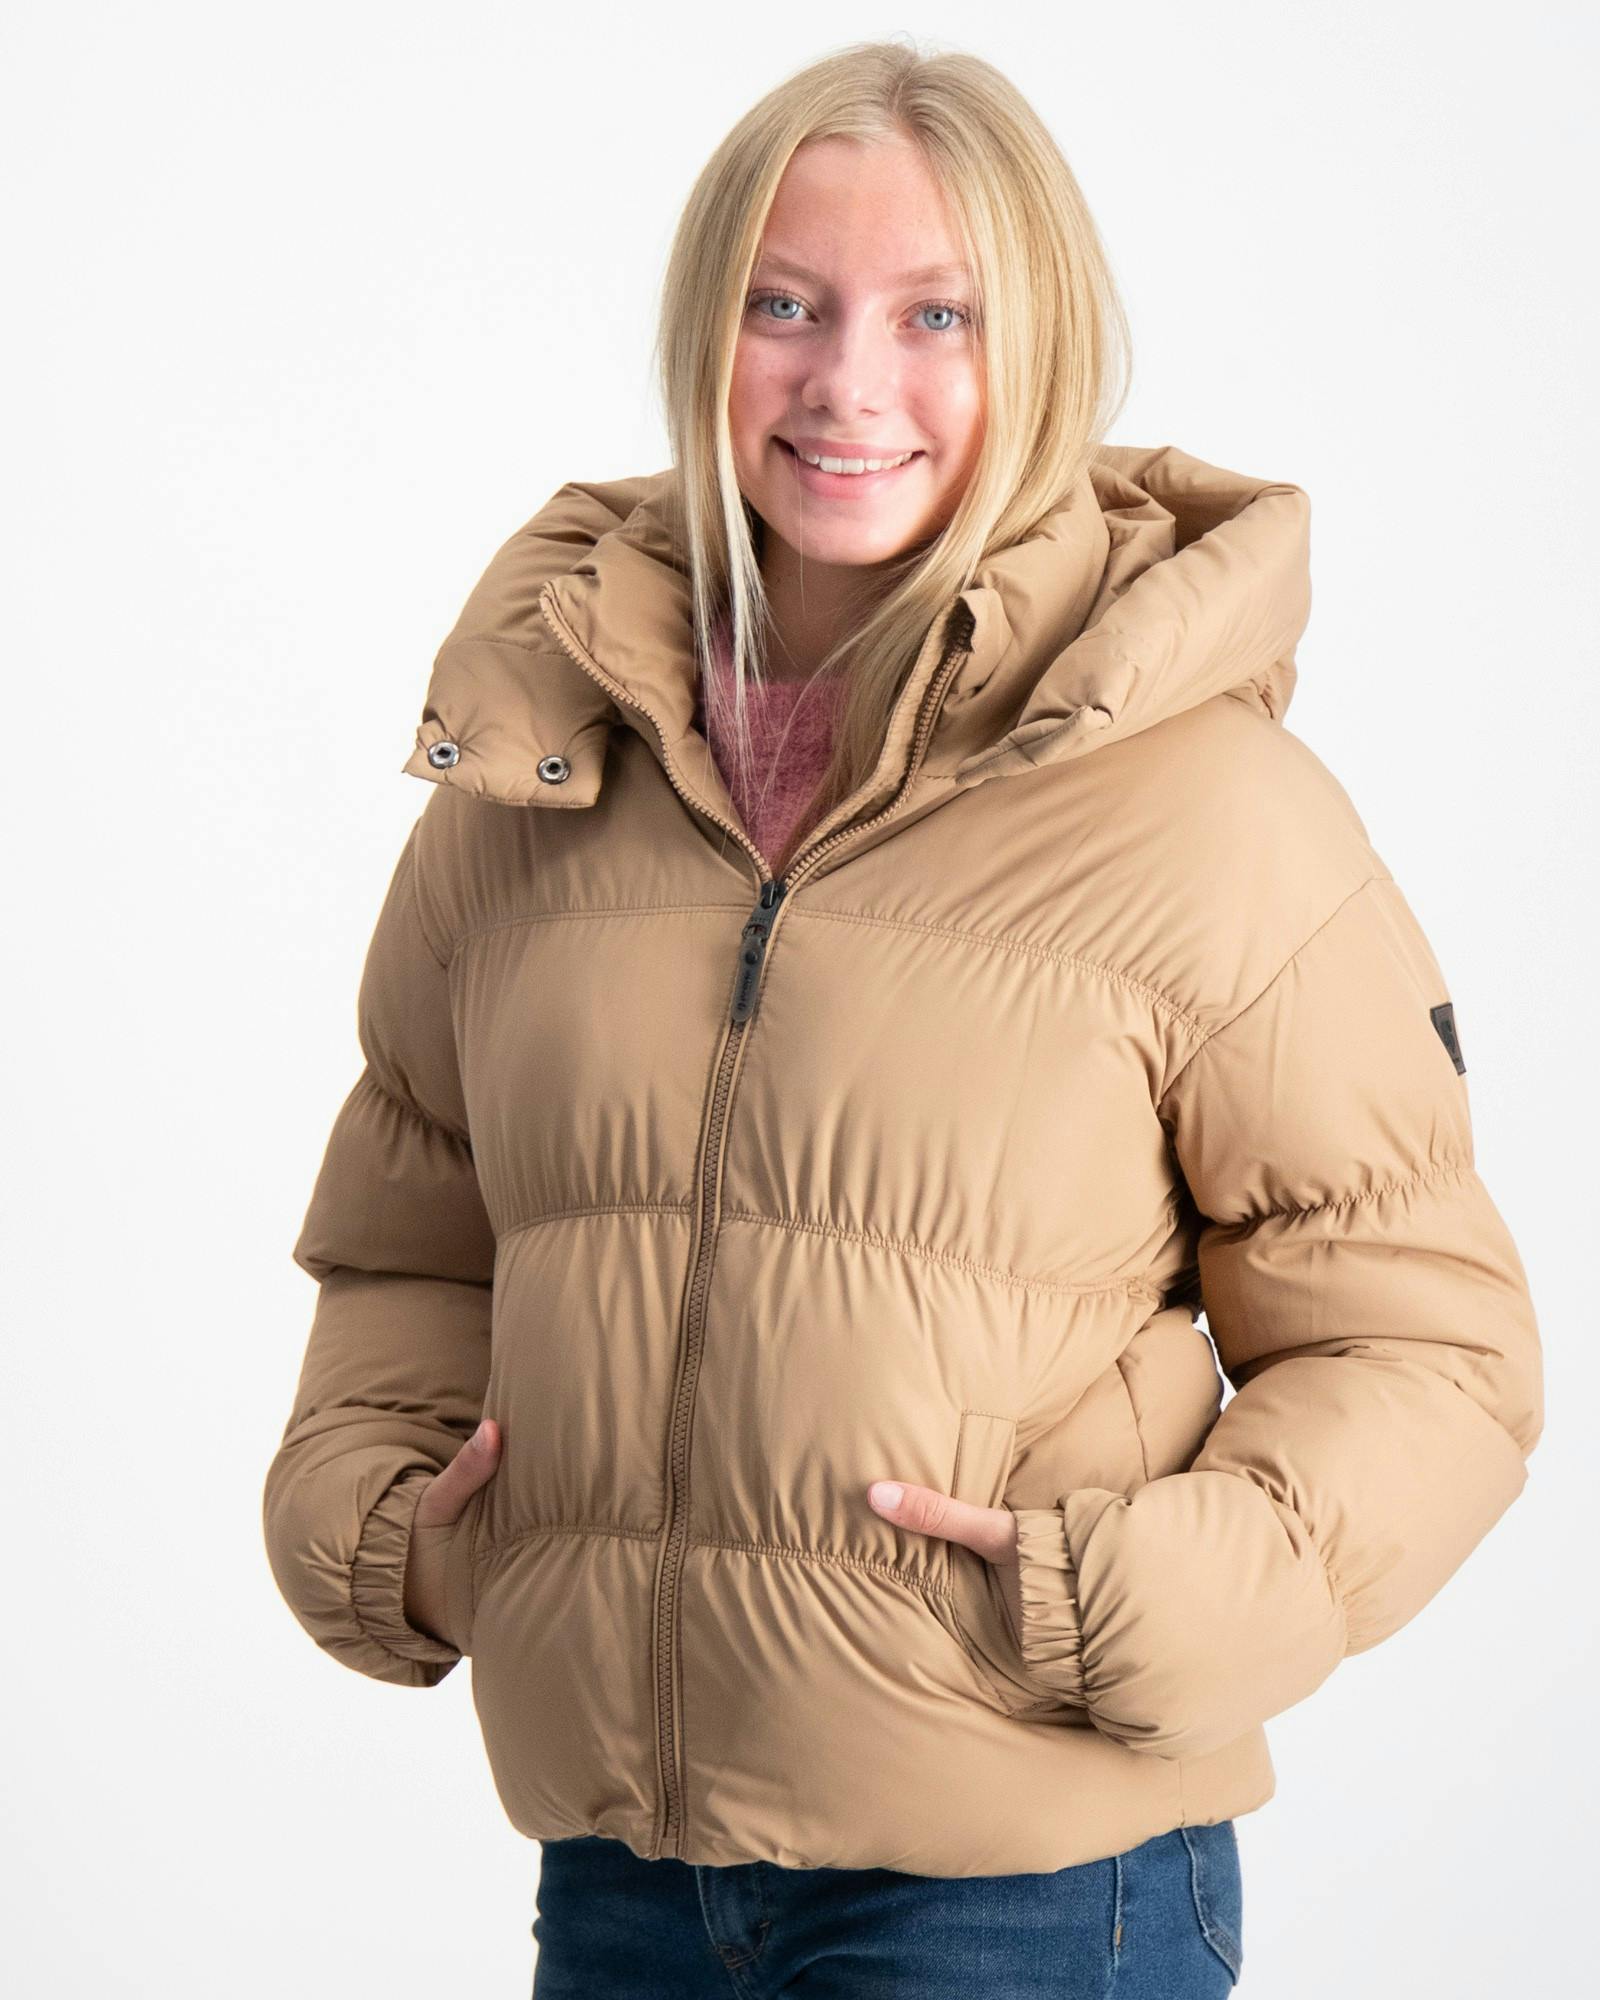 Girls outdoor jacket